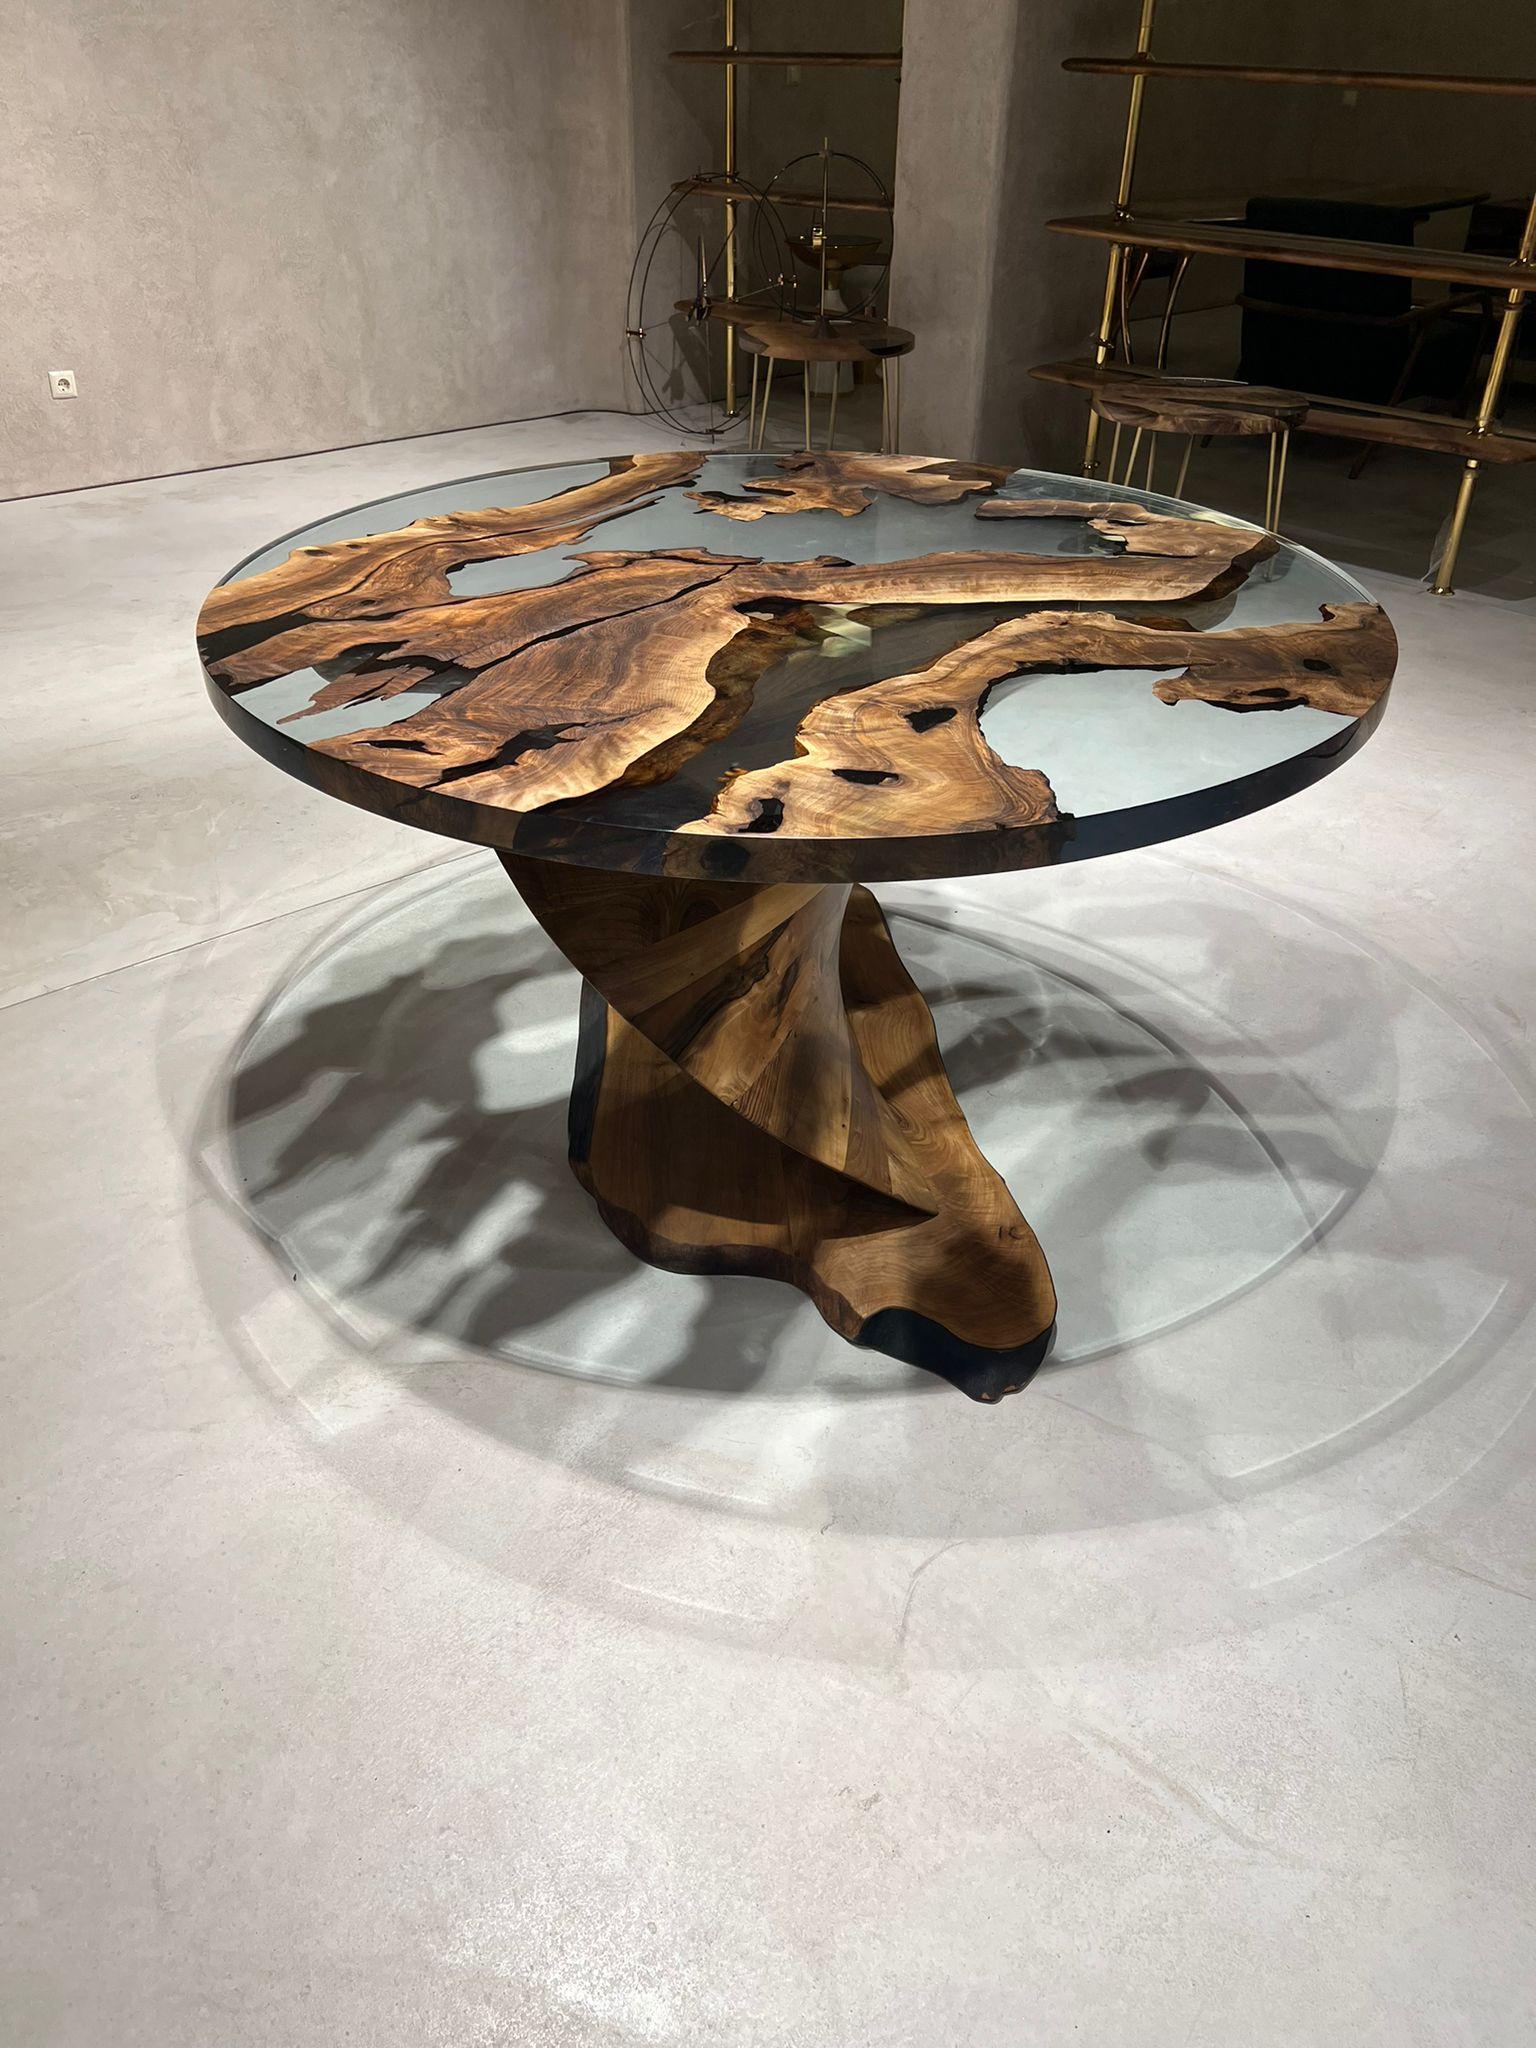 Voici la TABLE RONDE TYWIN - un meuble exquis et méticuleusement fabriqué qui promet d'ajouter une touche de sophistication à votre salle à manger. Cette table étonnante n'est pas seulement un endroit où prendre ses repas, mais aussi une œuvre d'art